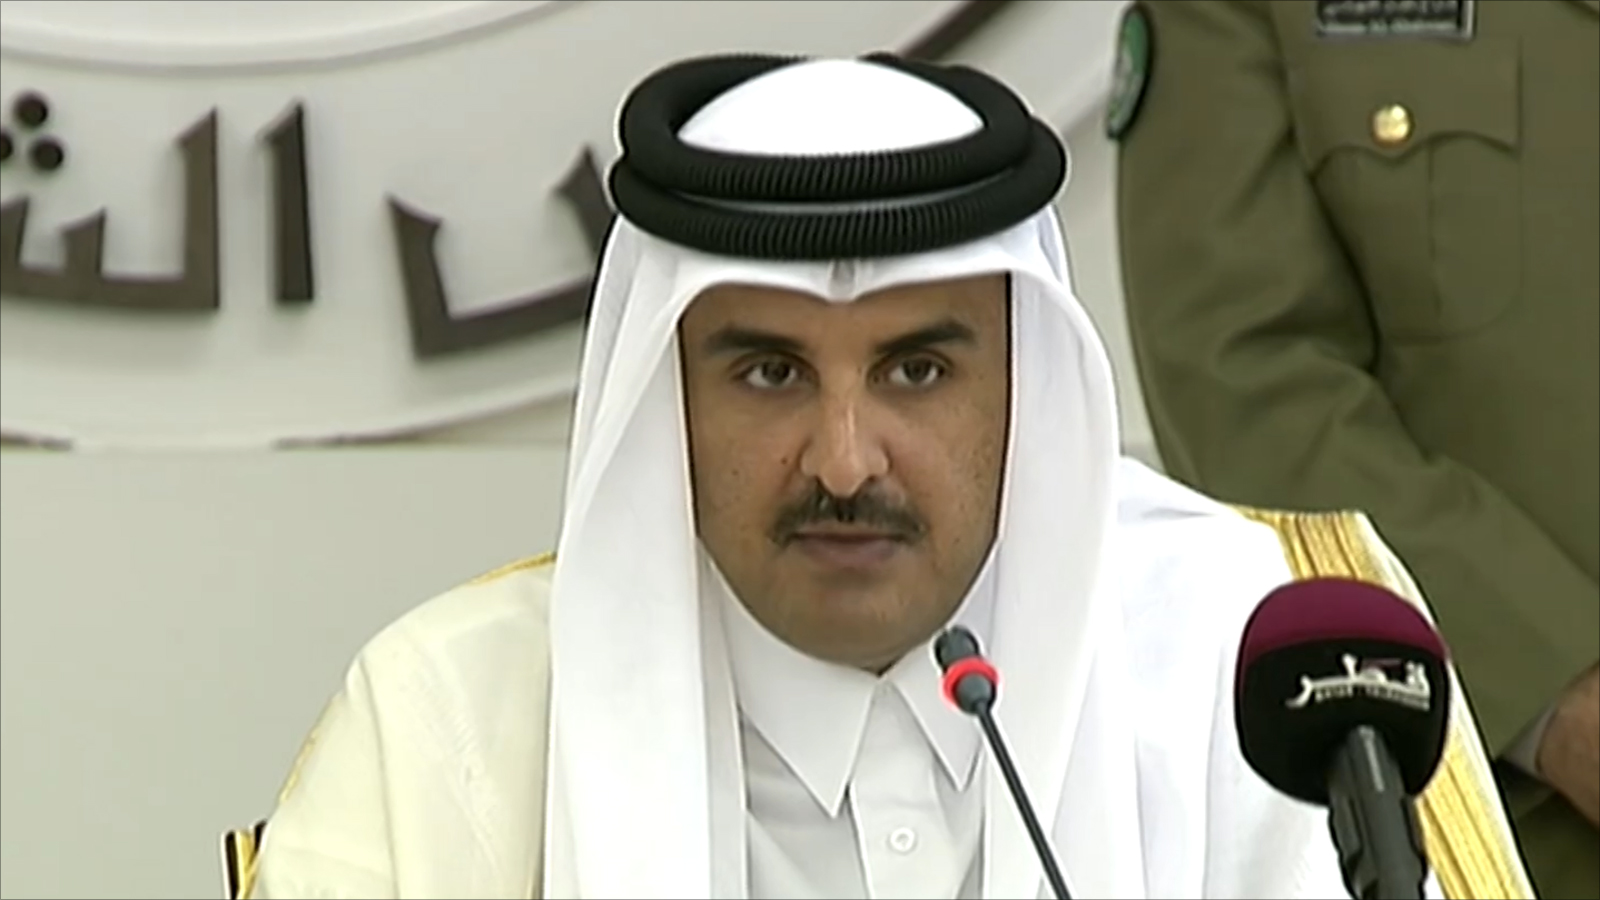 أمير قطر يصدر قانون «موارد بشرية» جديد ويغدق موظفي البلاد بمزايا وحوافز لا حصر لها